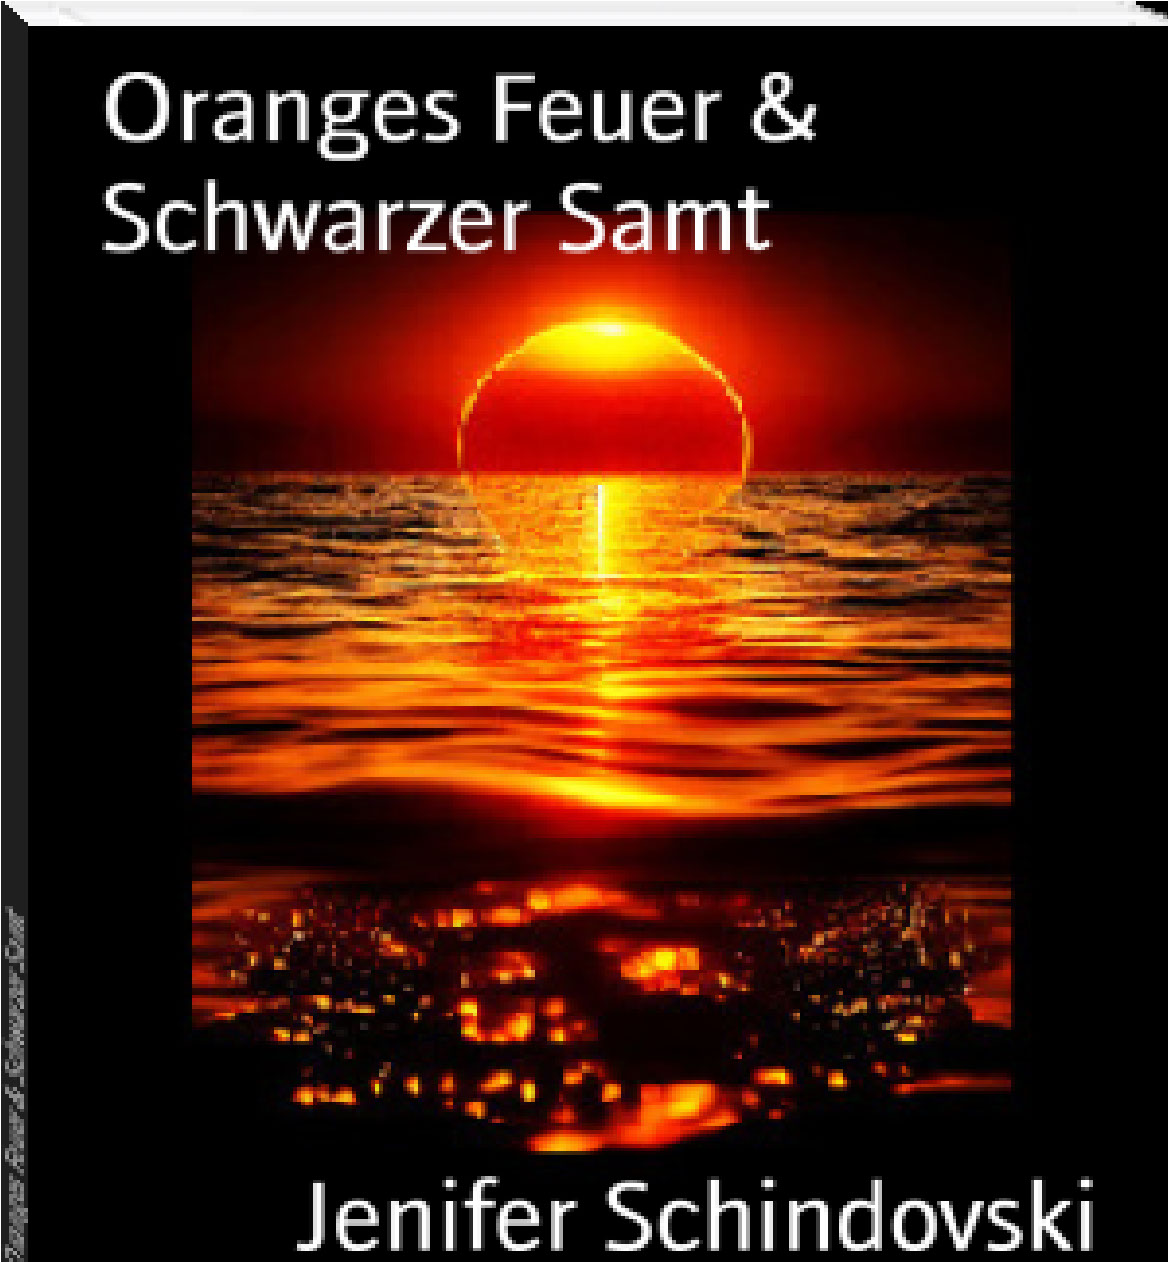 Oranges Feuer  Schwarzer Samt rendition image